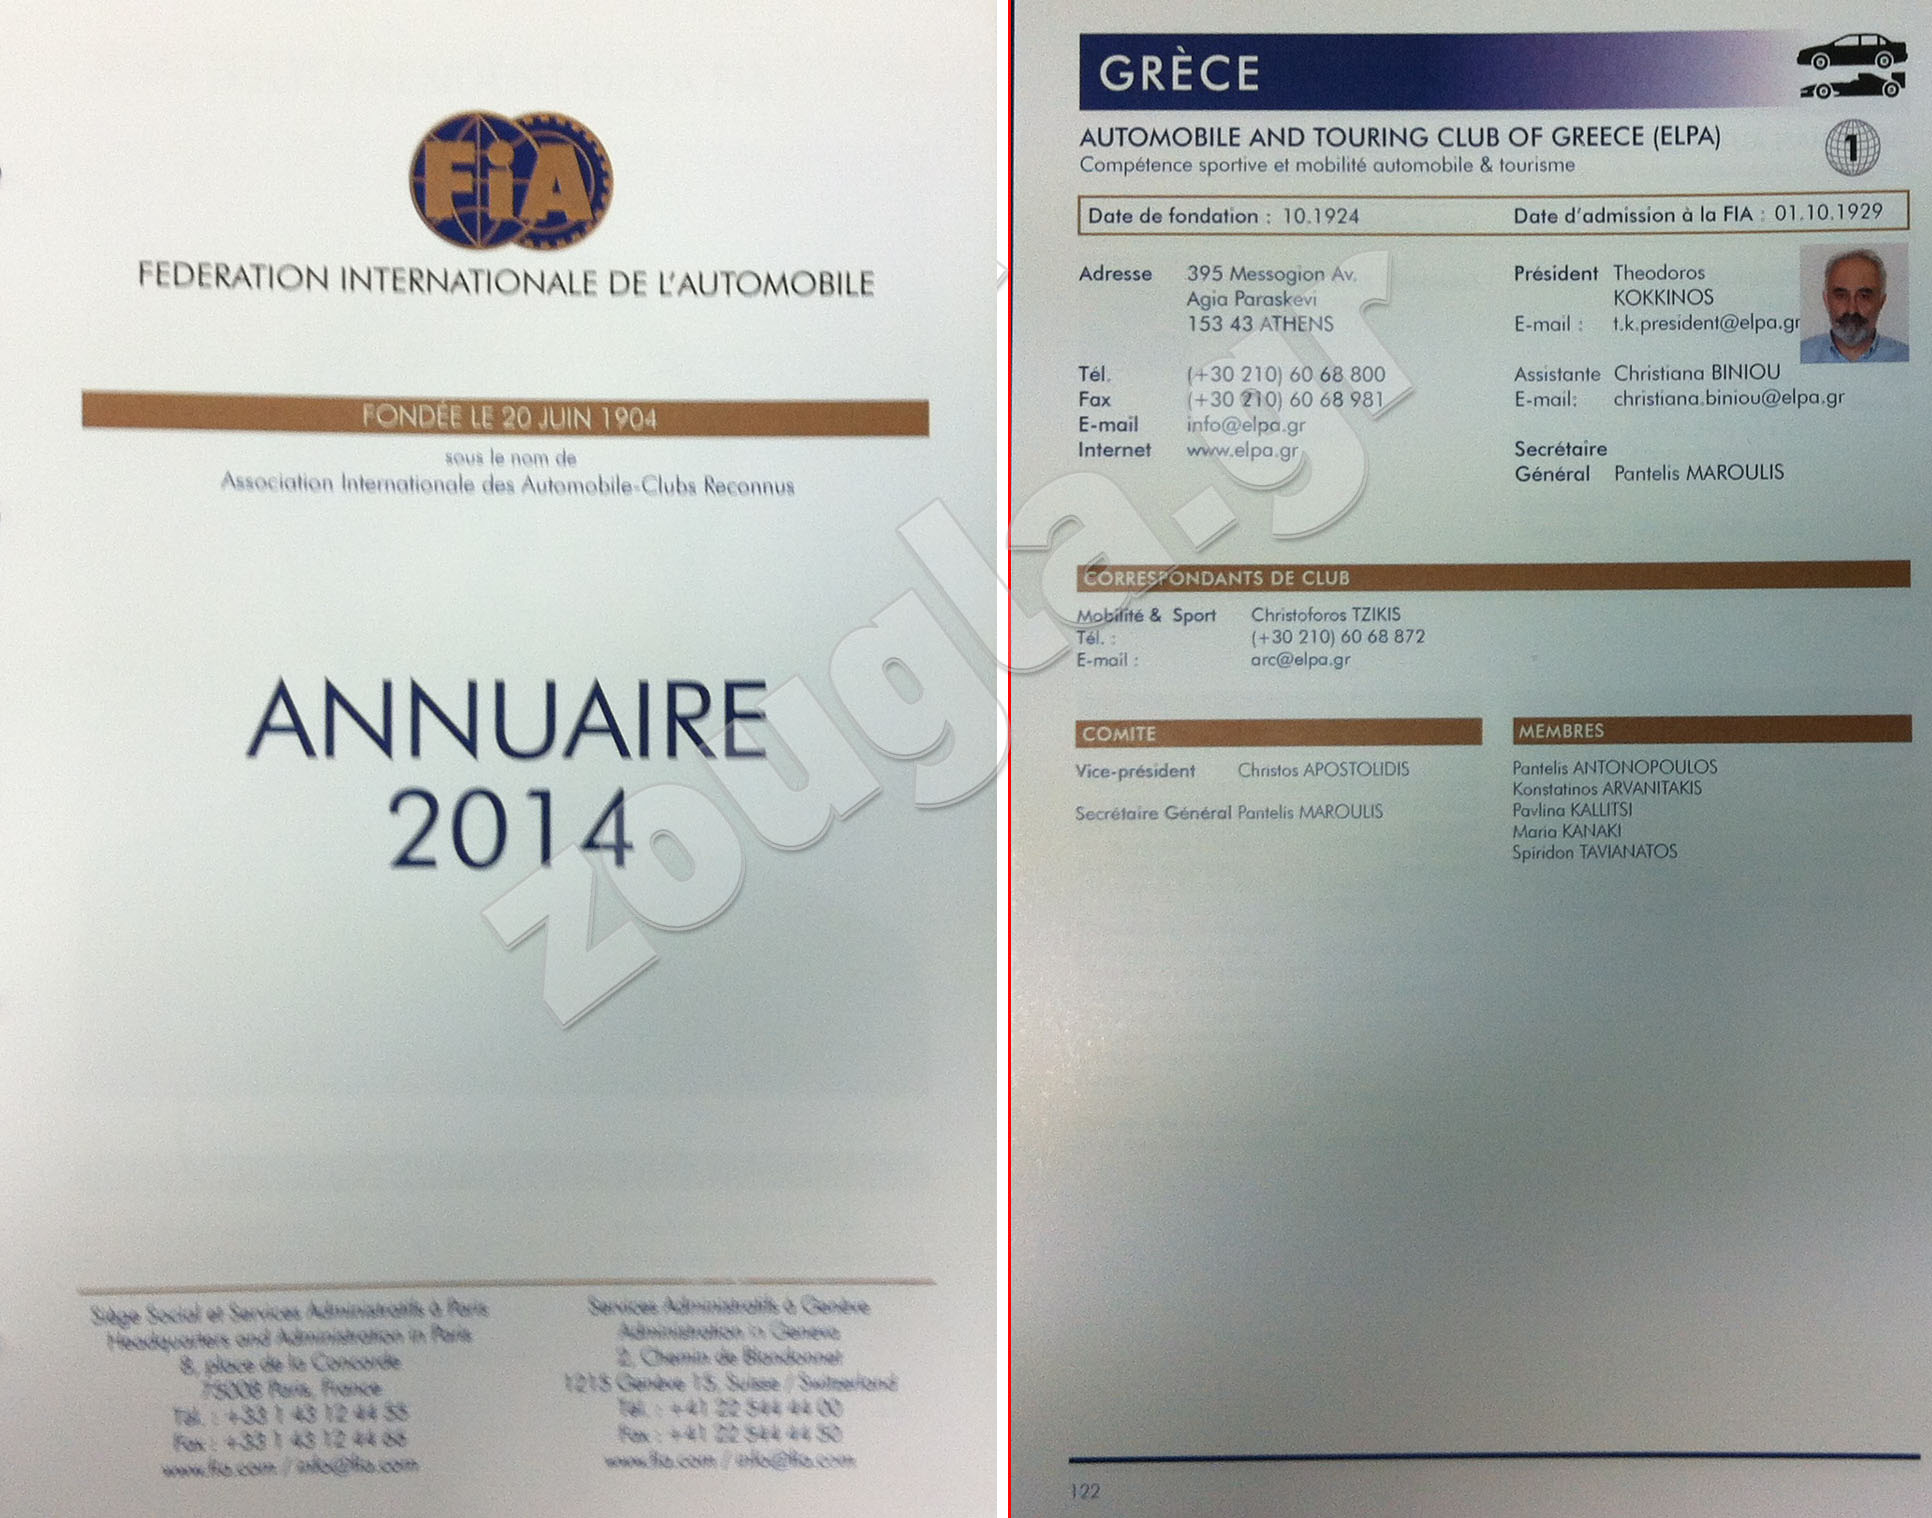 Το ετήσιο ημερολόγιο της FIA δείχνει ότι μέλος της στην Ελλάδα είναι η ΕΛΠΑ